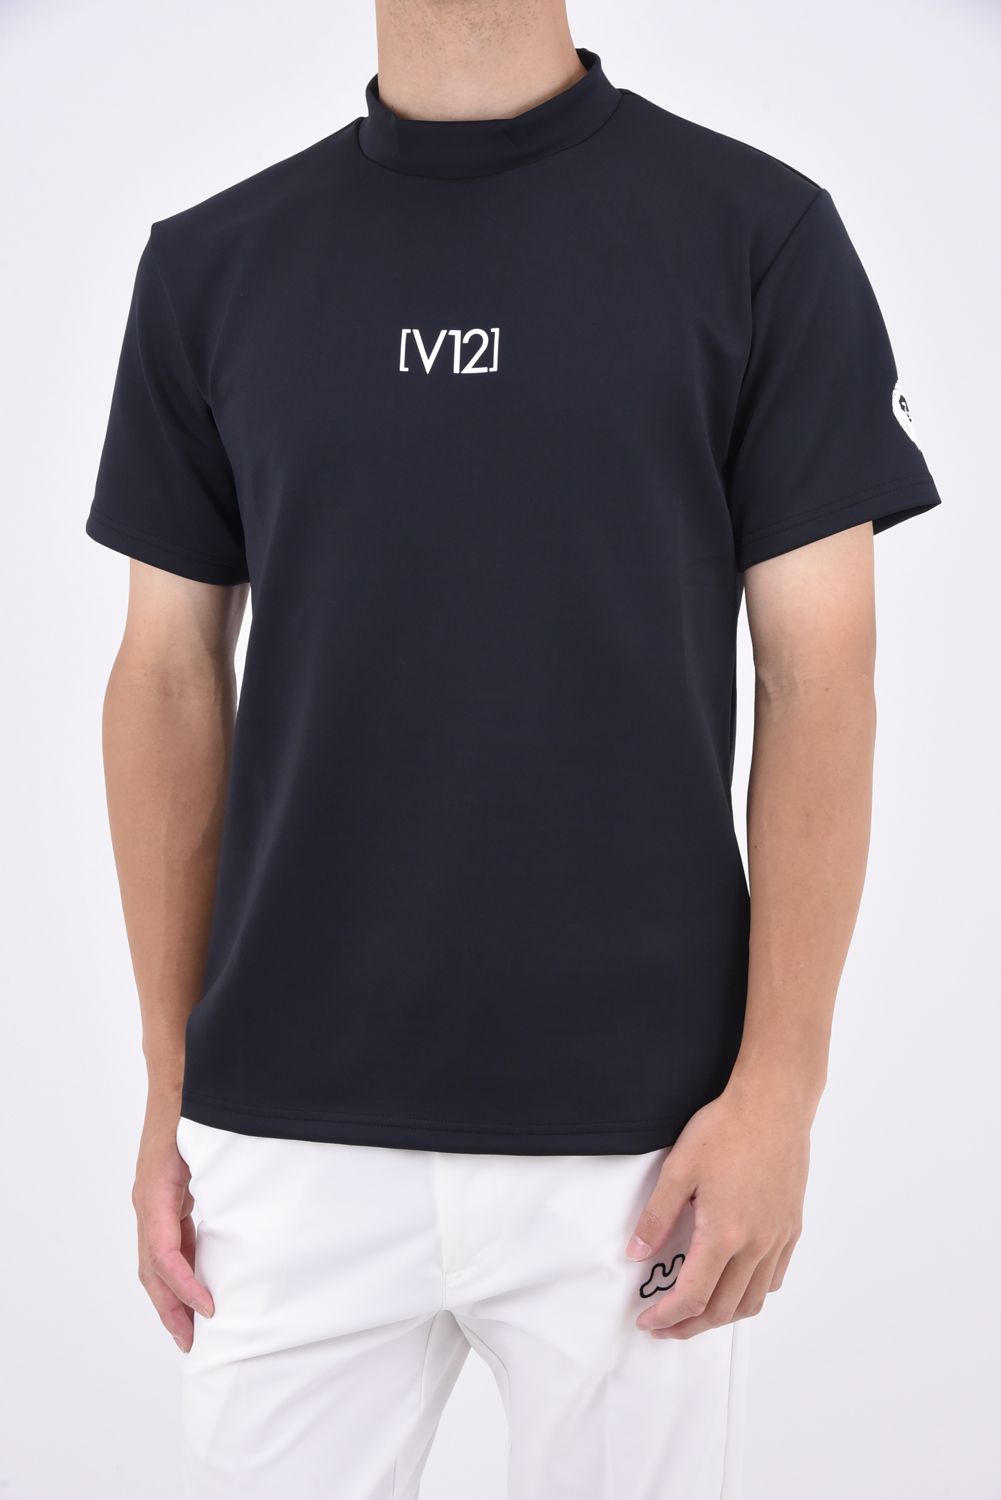 送料無料!! V12モックネックTシャツサイズXXL - ゴルフ